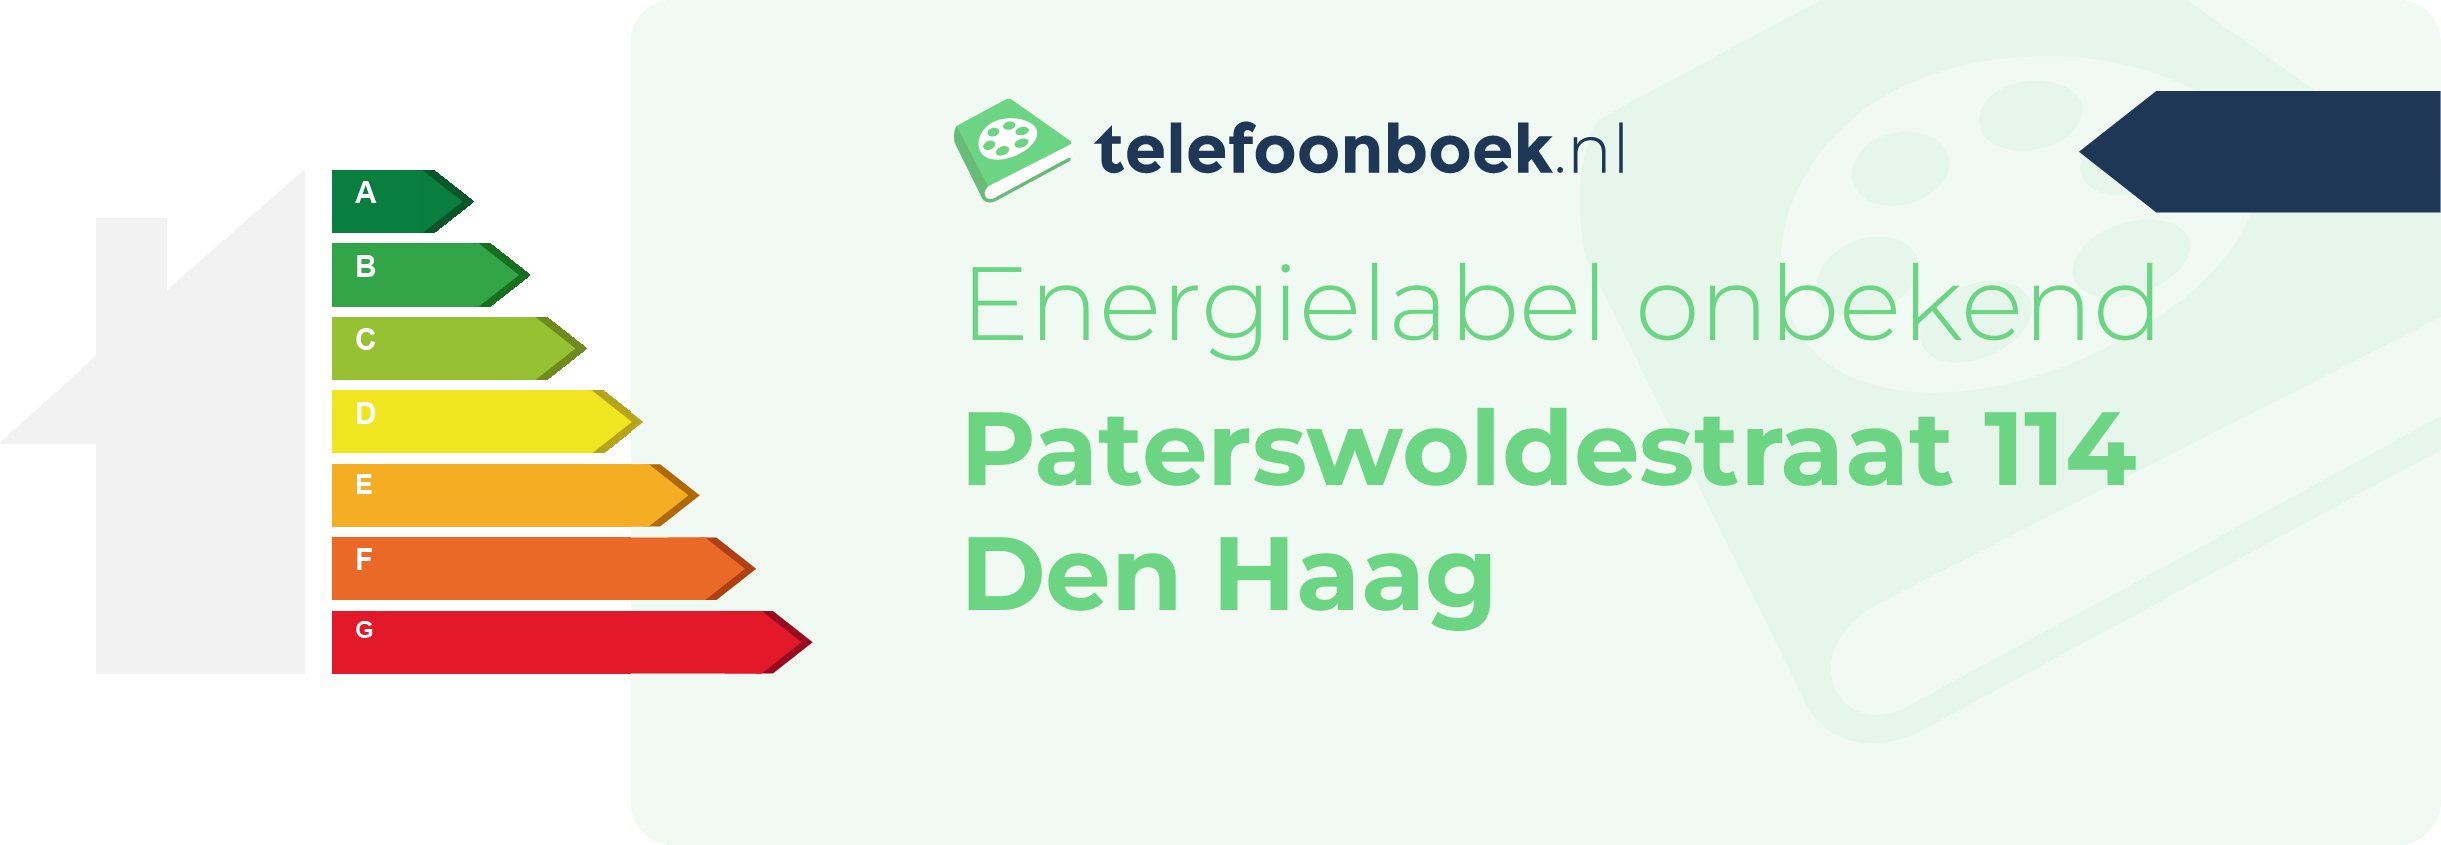 Energielabel Paterswoldestraat 114 Den Haag